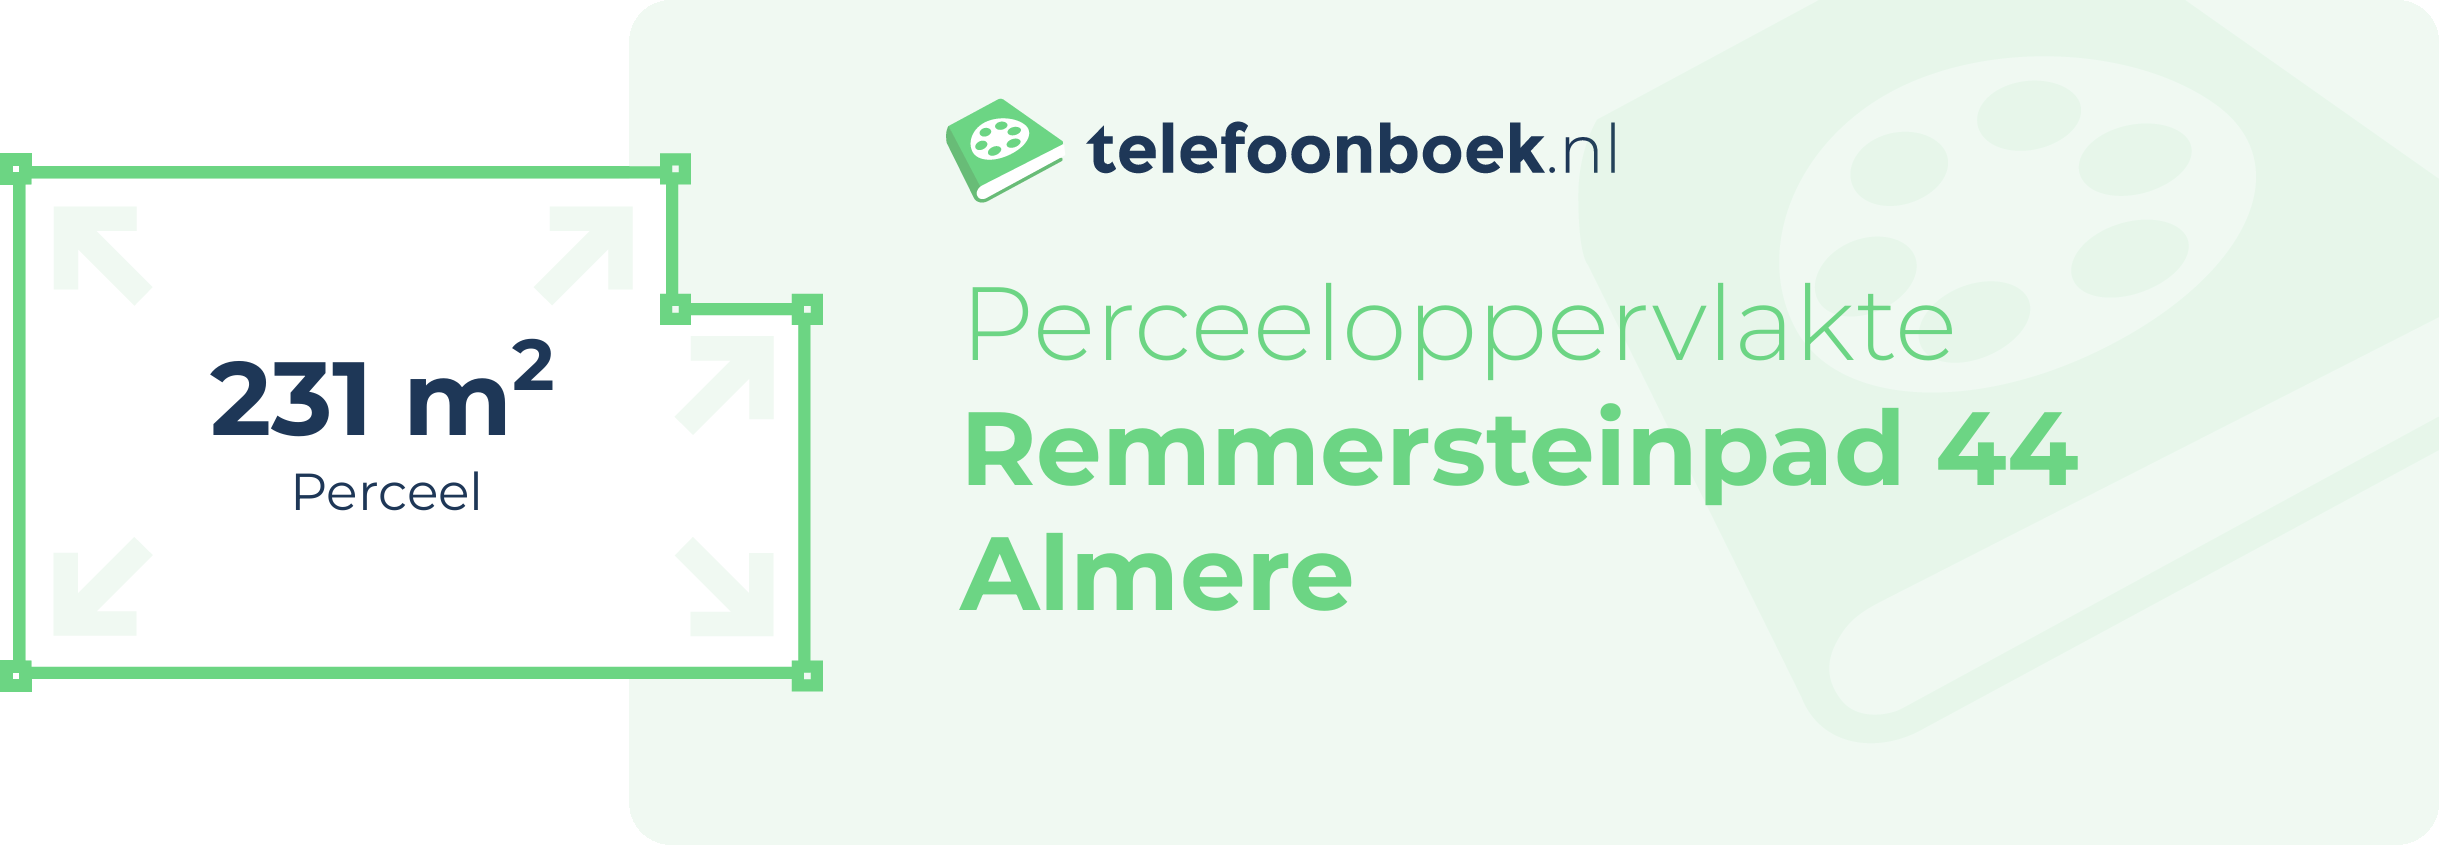 Perceeloppervlakte Remmersteinpad 44 Almere